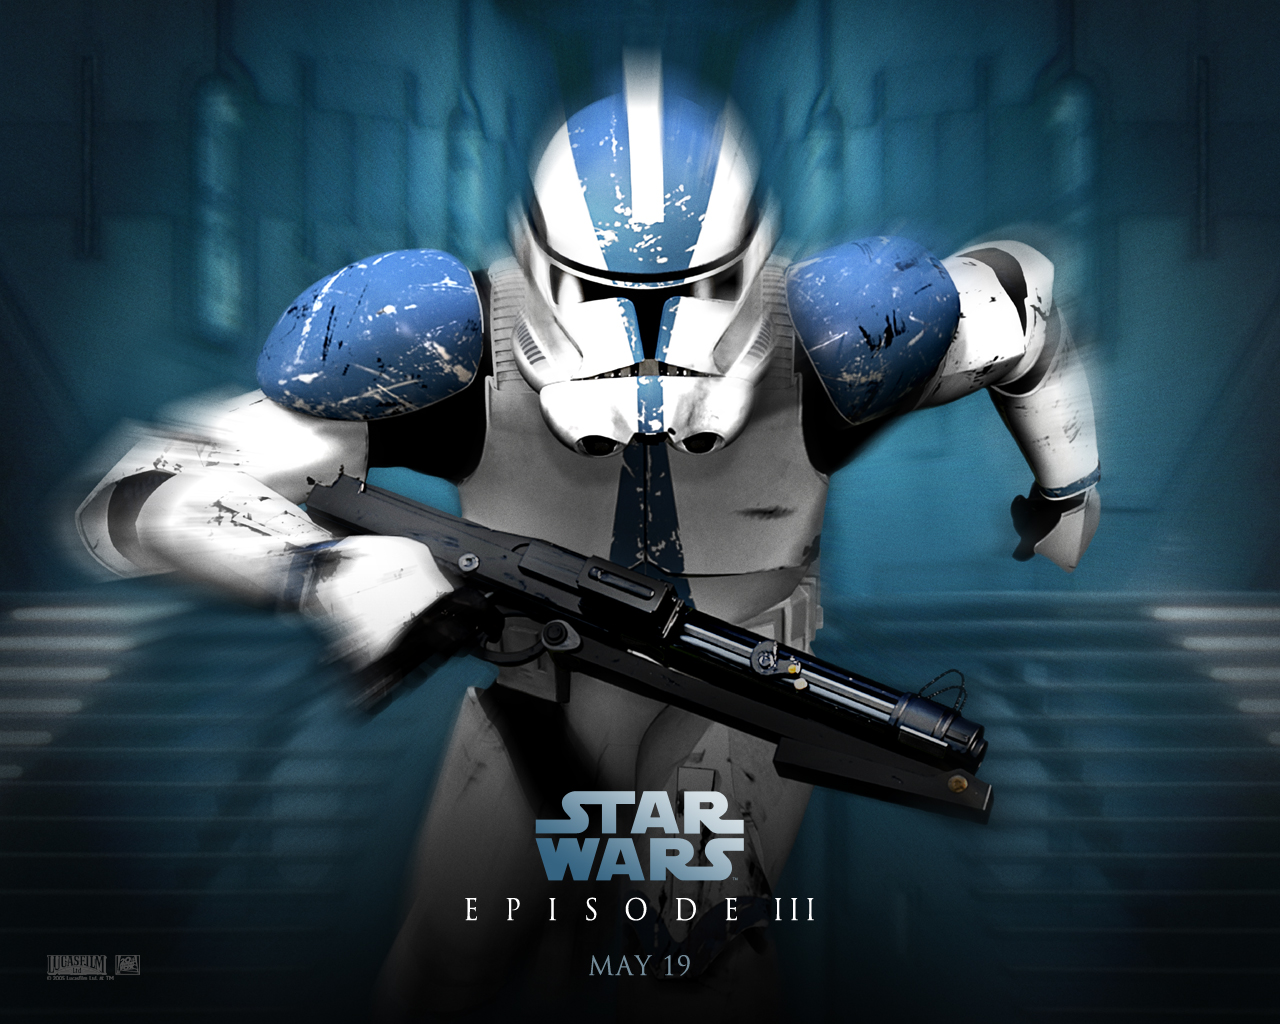 Star Wars Wallpaper Background Image Design Trends